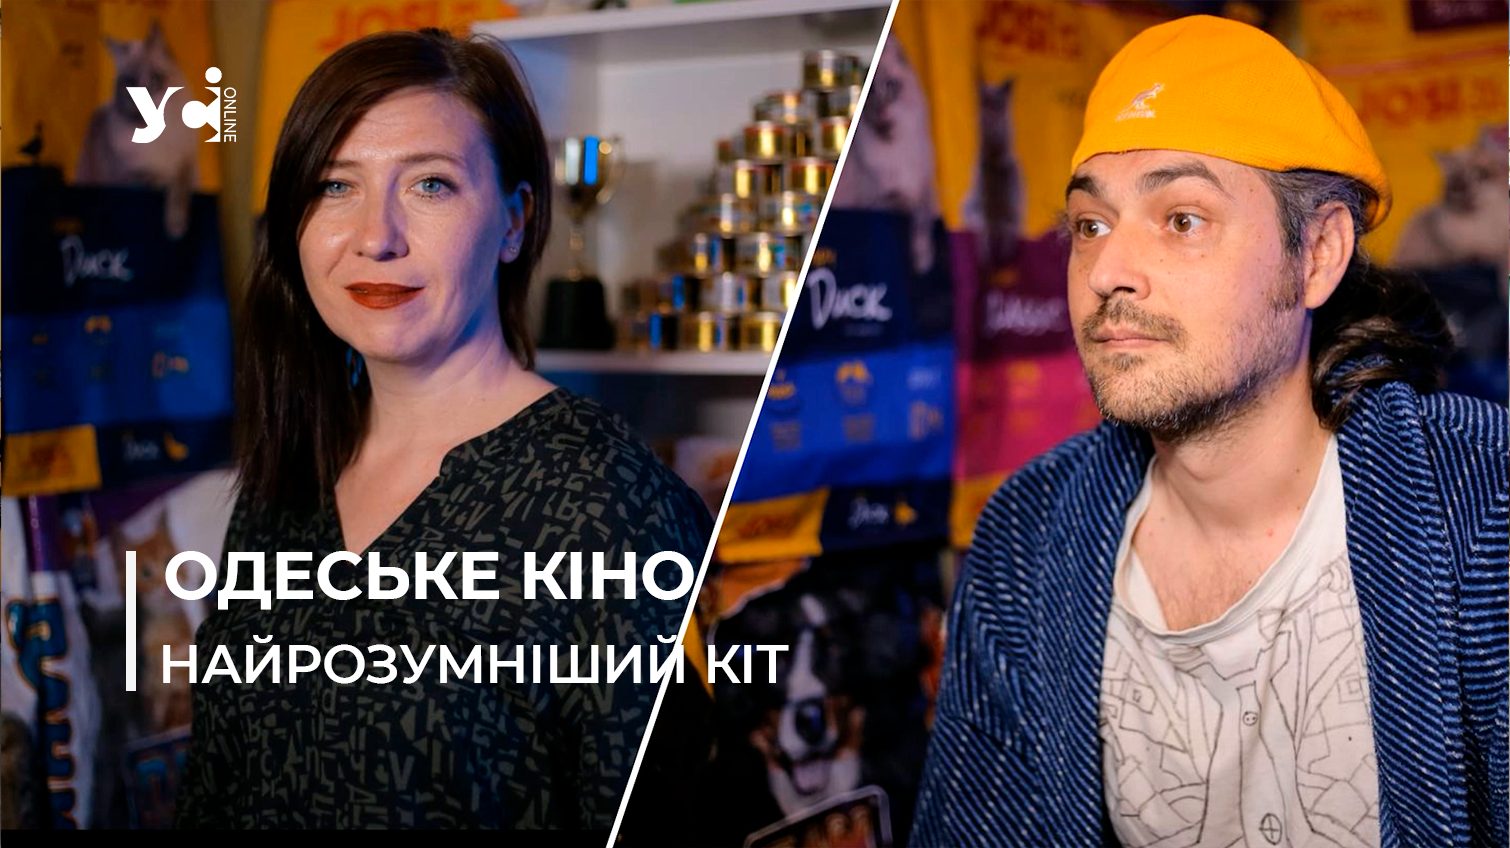 Обіцяють хіт: в Одесі знімають фільм про те, як кіт взяв на роботу людину (відео) «фото»